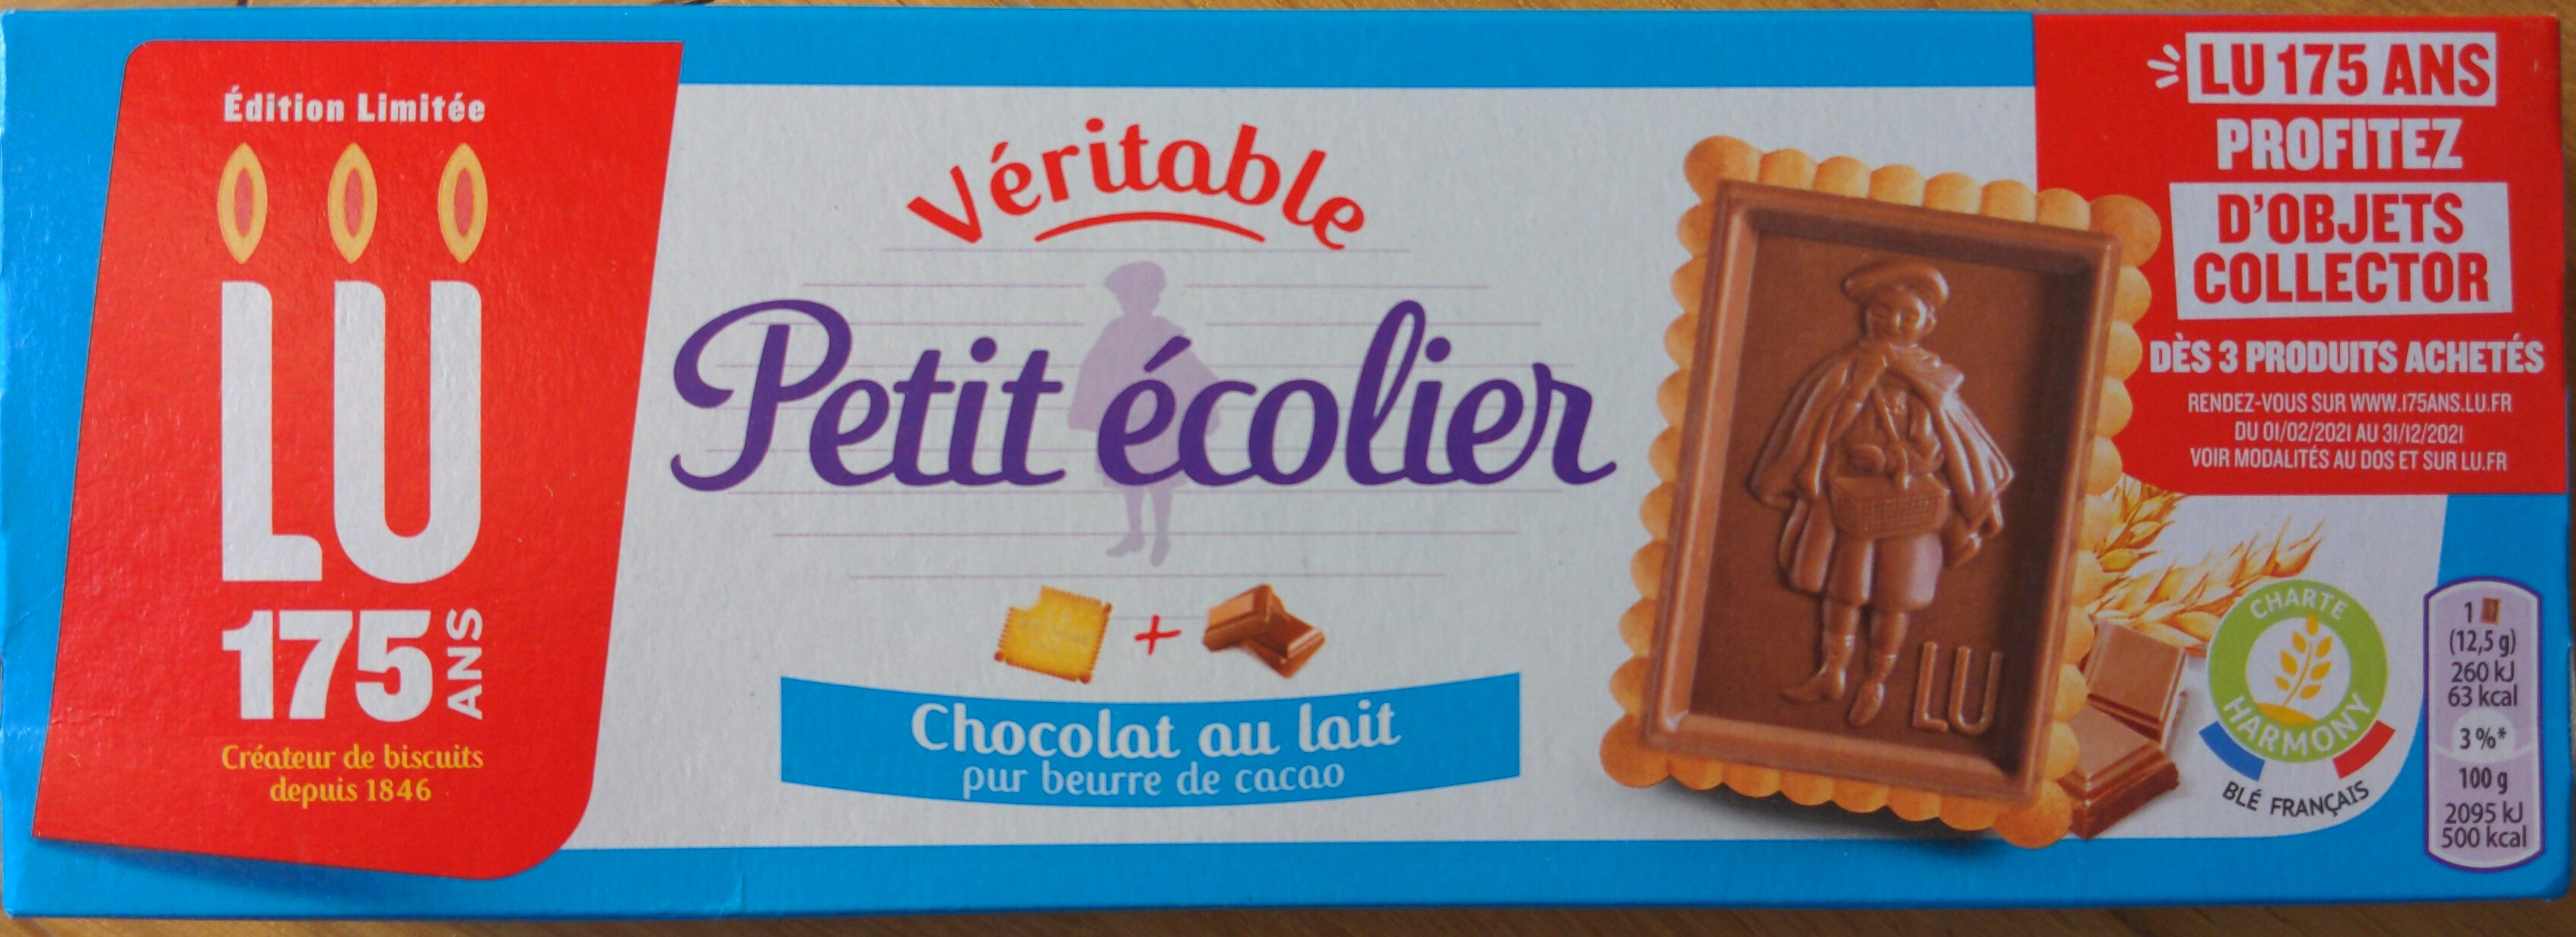 Véritable Petit Écolier Chocolat au Lait - 製品 - fr